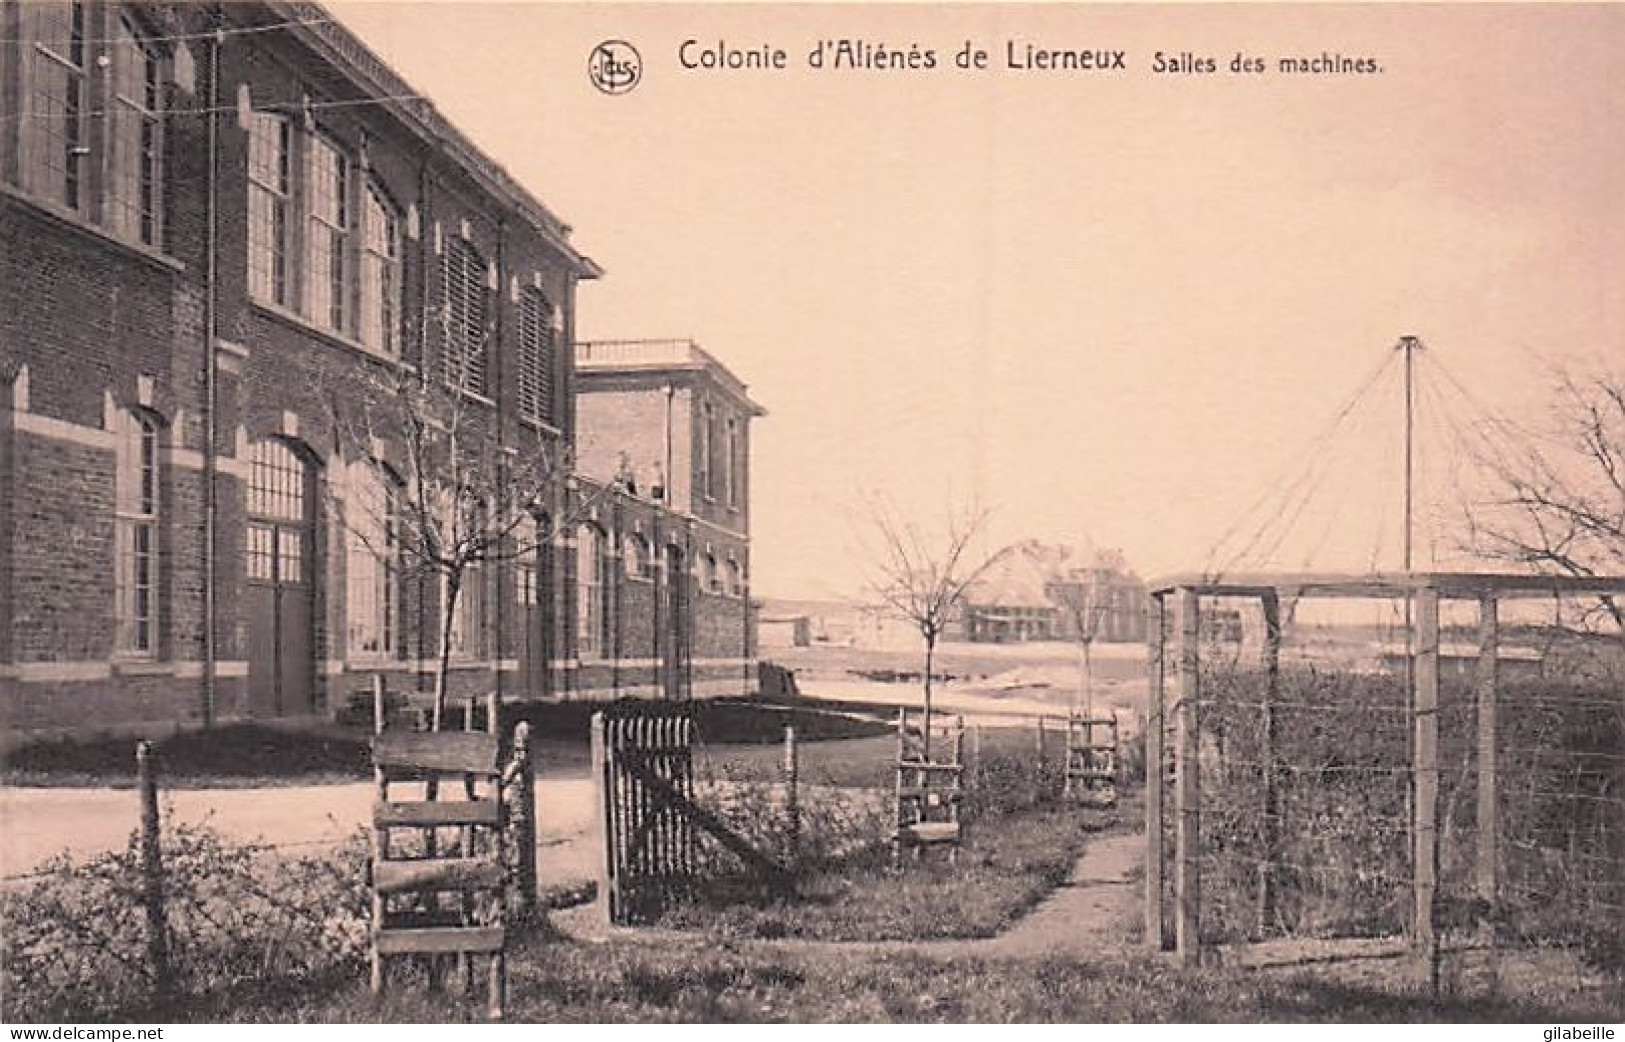 LIERNEUX - Colonie D'aliénés - Salles Des Machines - Lierneux